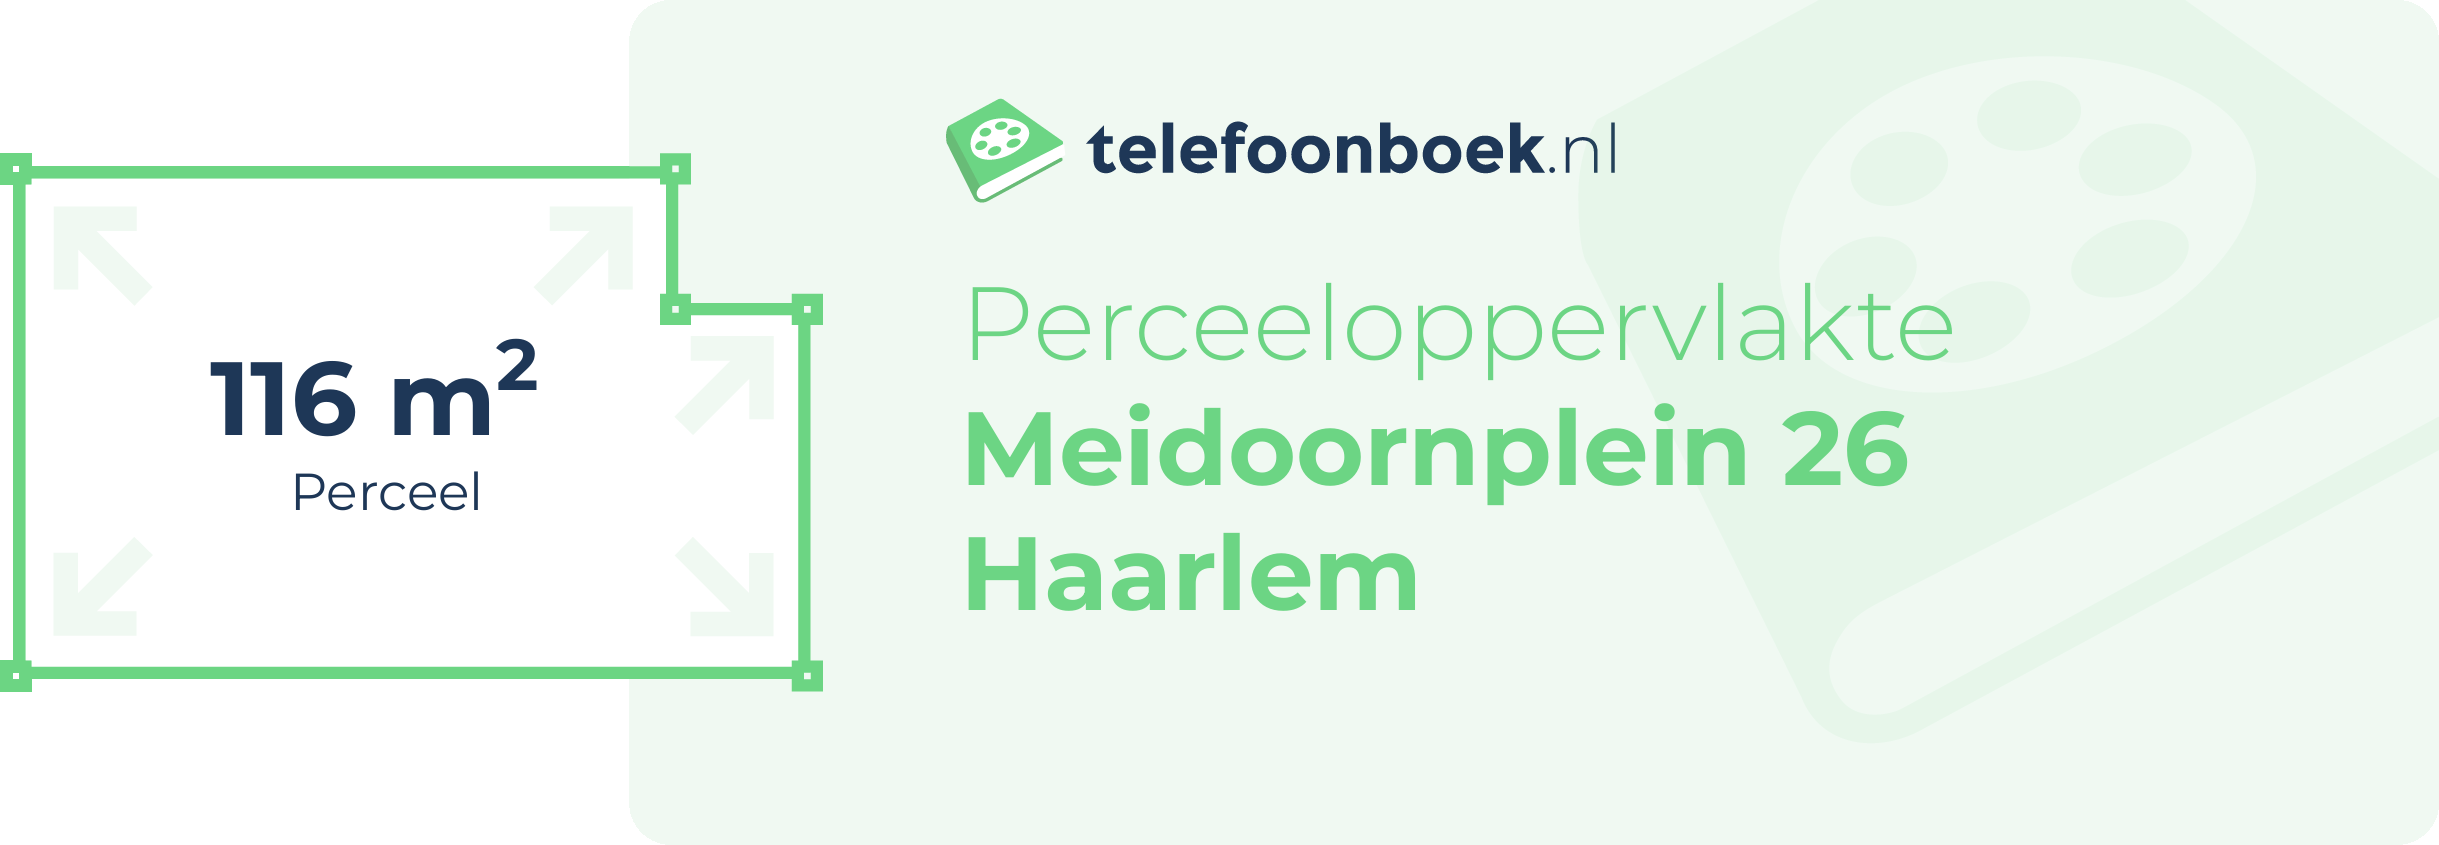 Perceeloppervlakte Meidoornplein 26 Haarlem